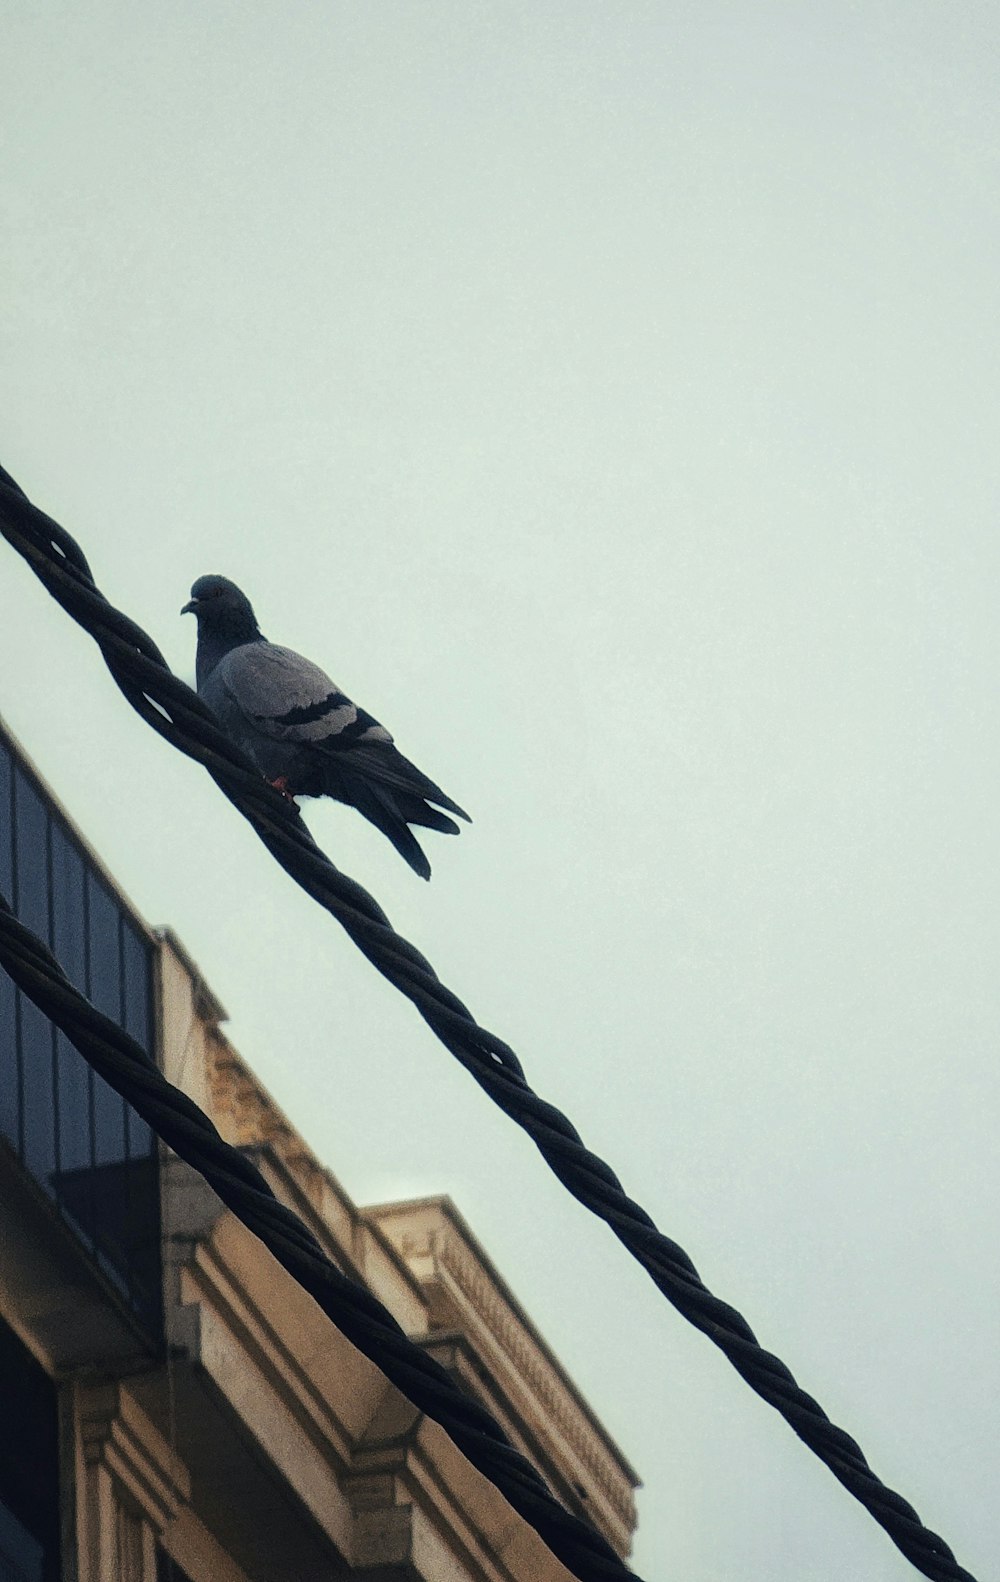 un pigeon assis sur une ligne électrique à côté d’un bâtiment